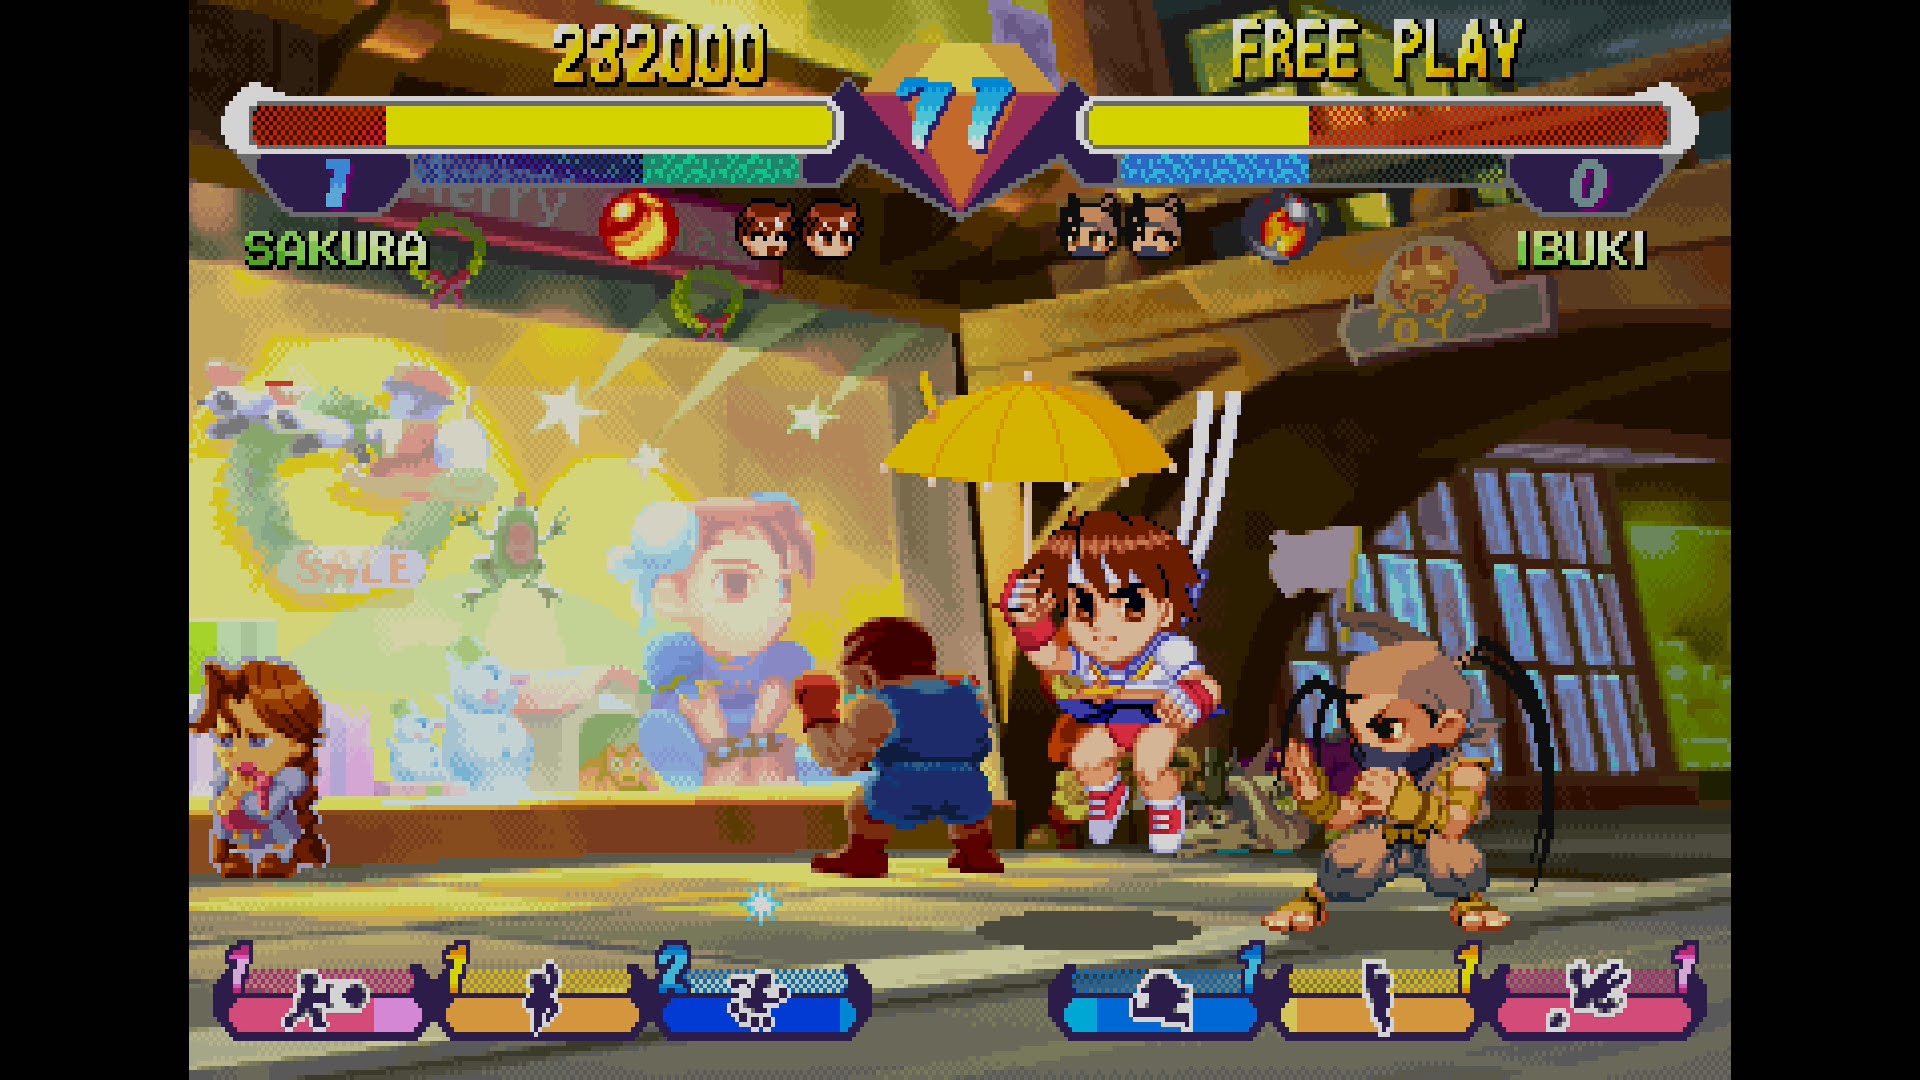 Capcom divulga requisitos para jogar Street Fighter V no PC - NerdBunker